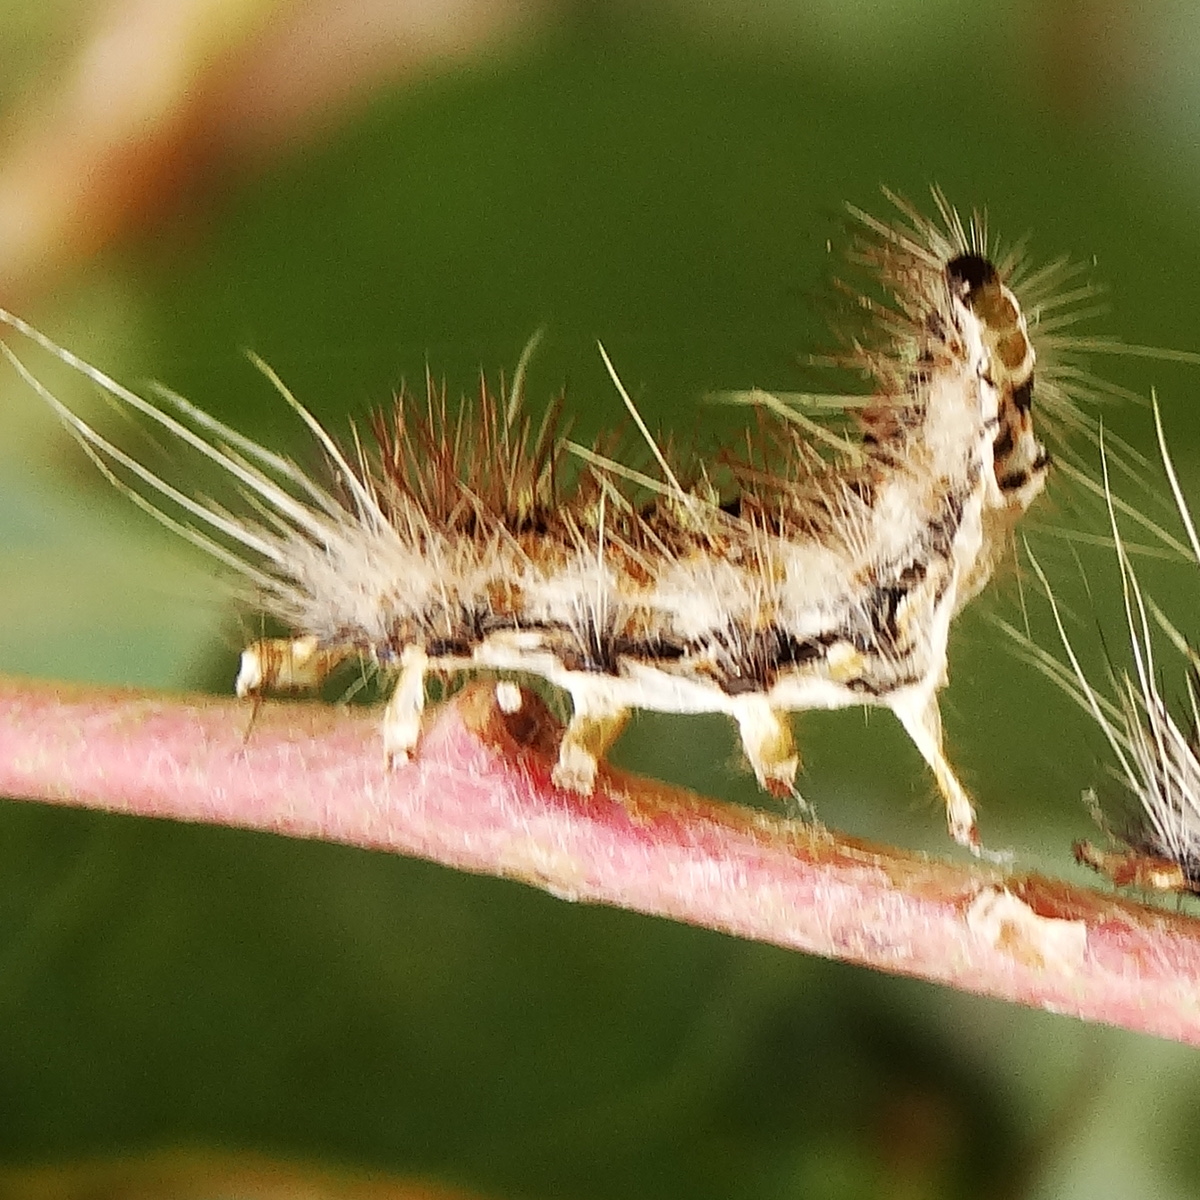 Parasitized caterpillars